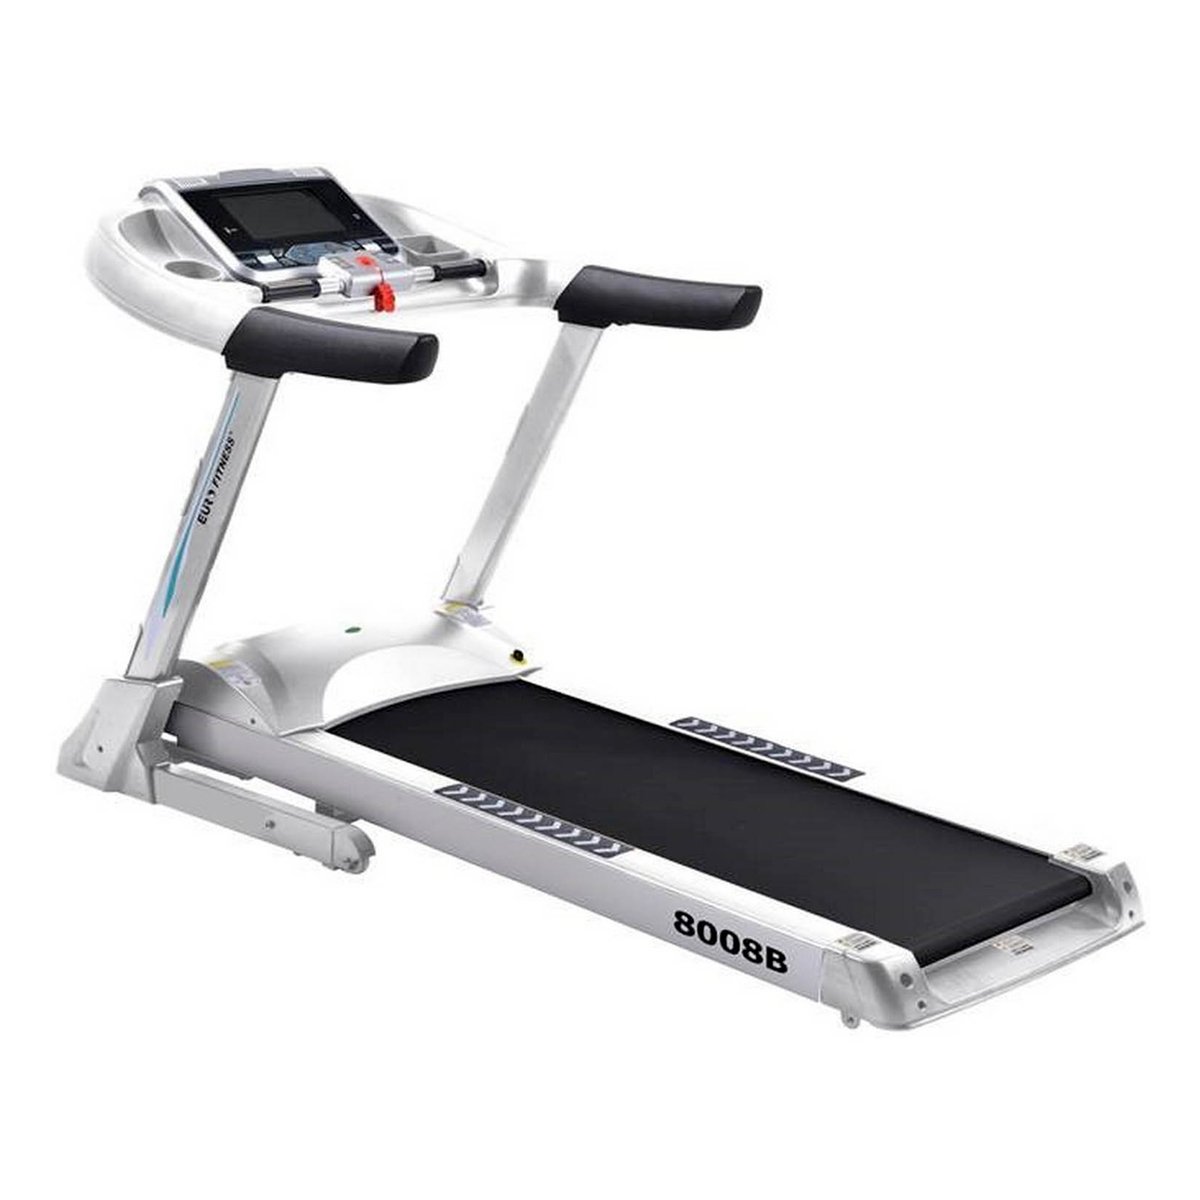 Euro Fitness Motorized Treadmill 8008-B 3.5HP